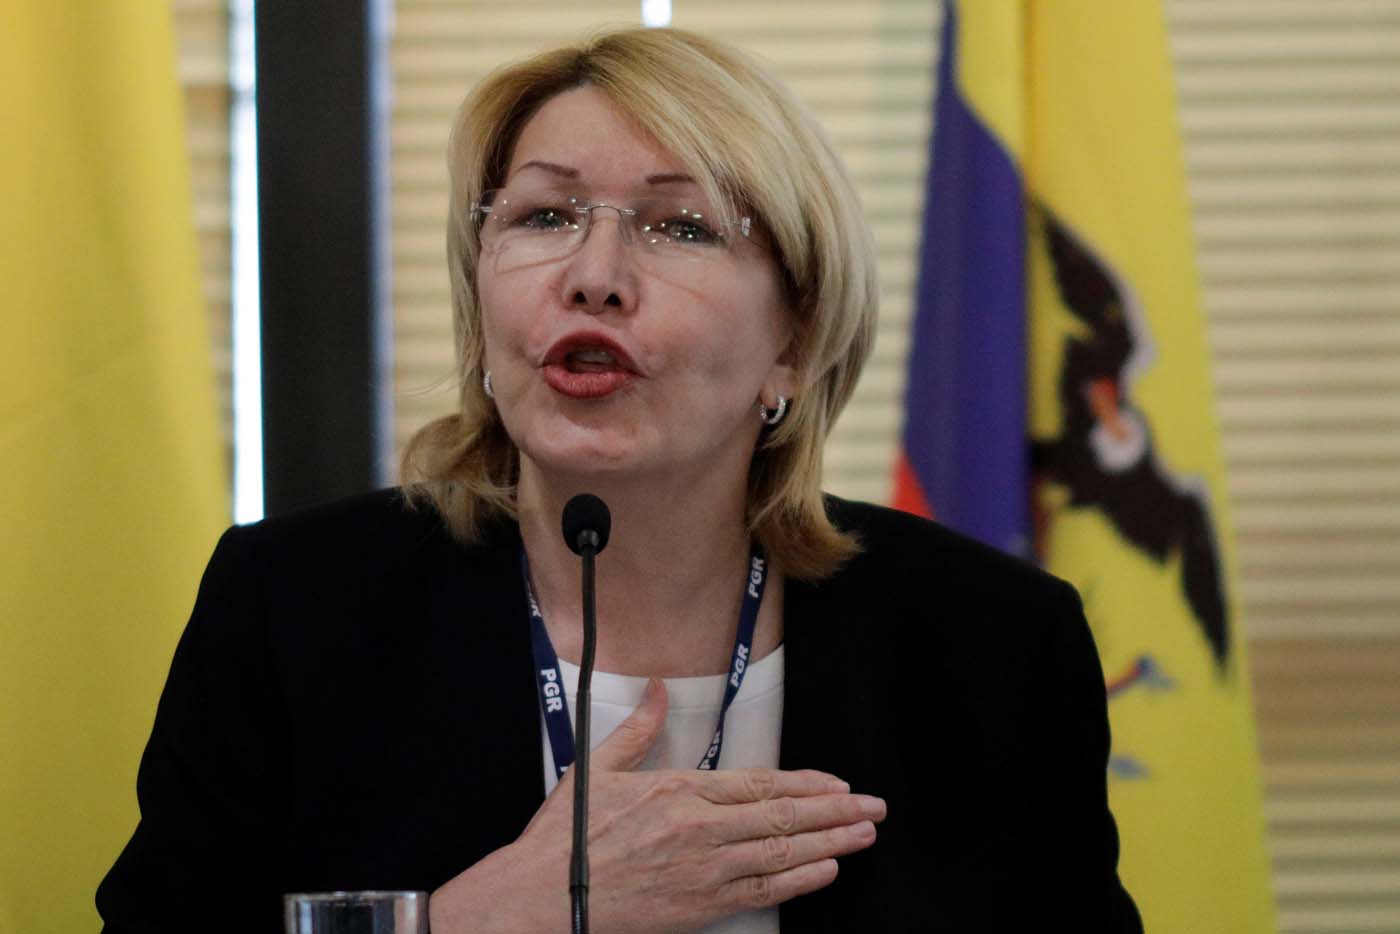 El mensaje de Luisa Ortega Díaz a los abogados venezolanos